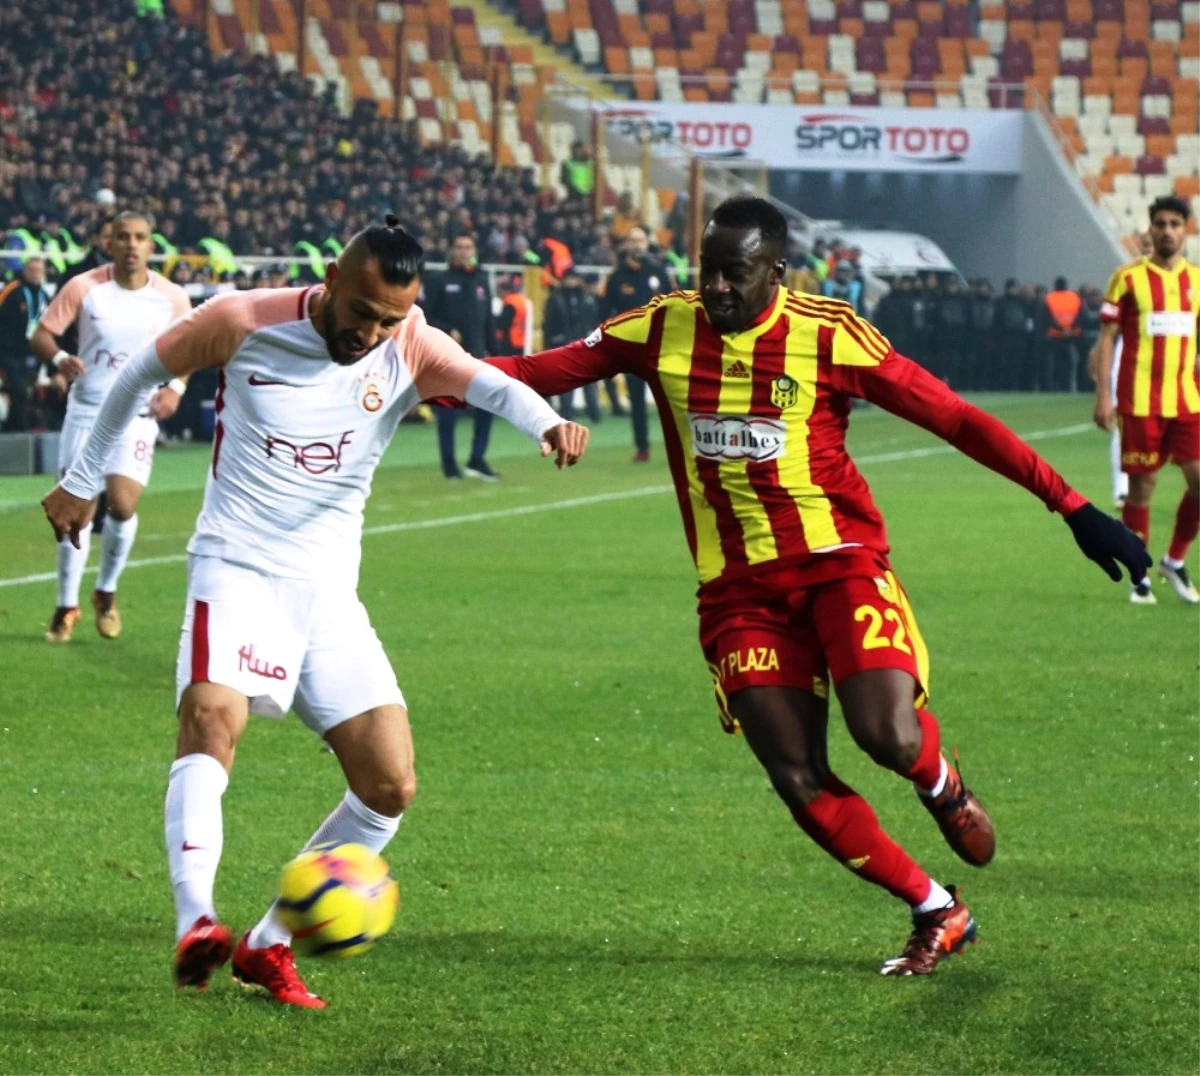 Süper Lig: Evkur Yeni Malatyaspor: 2 -Galatasaray: 0 (İlk Yarı)